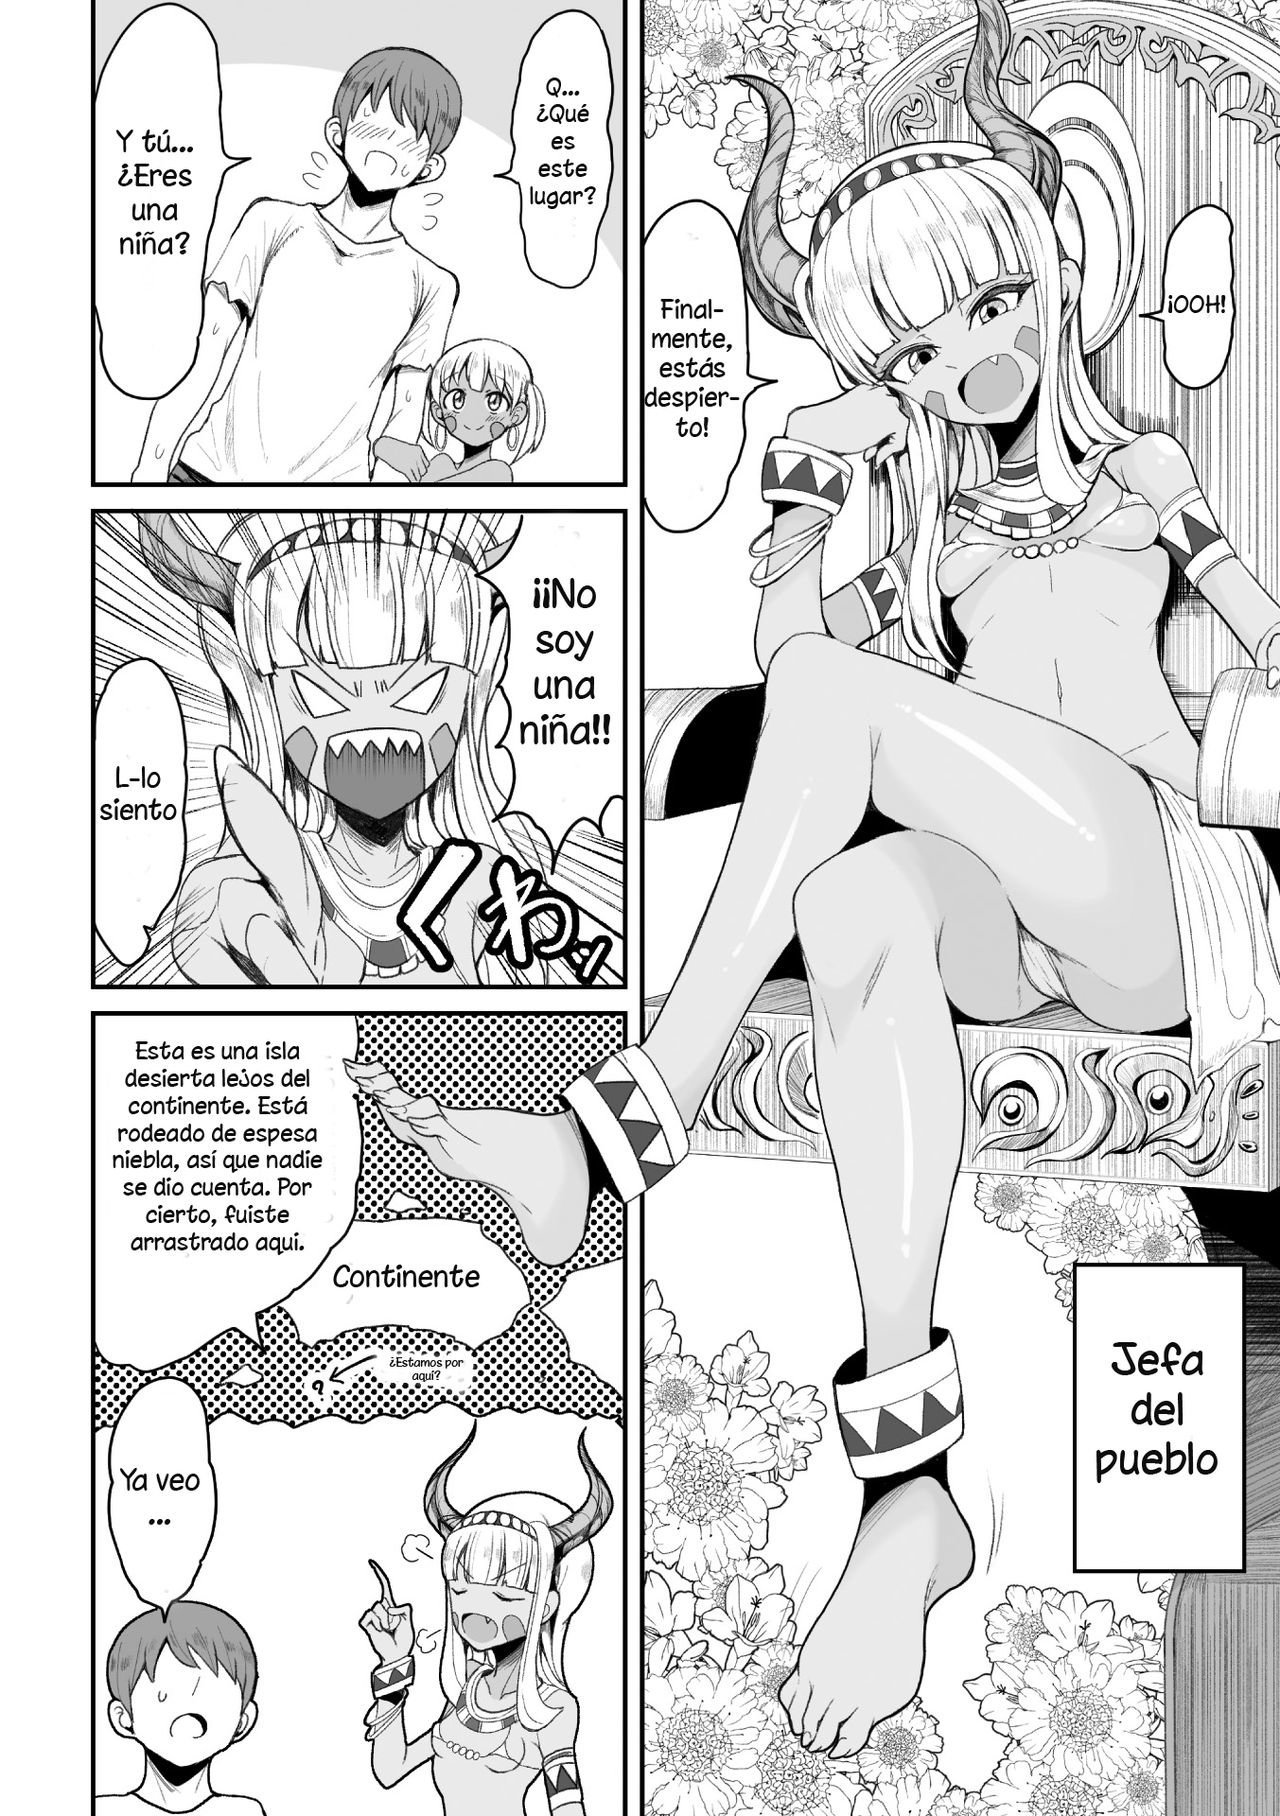 Motsuaki comic #1 - 5